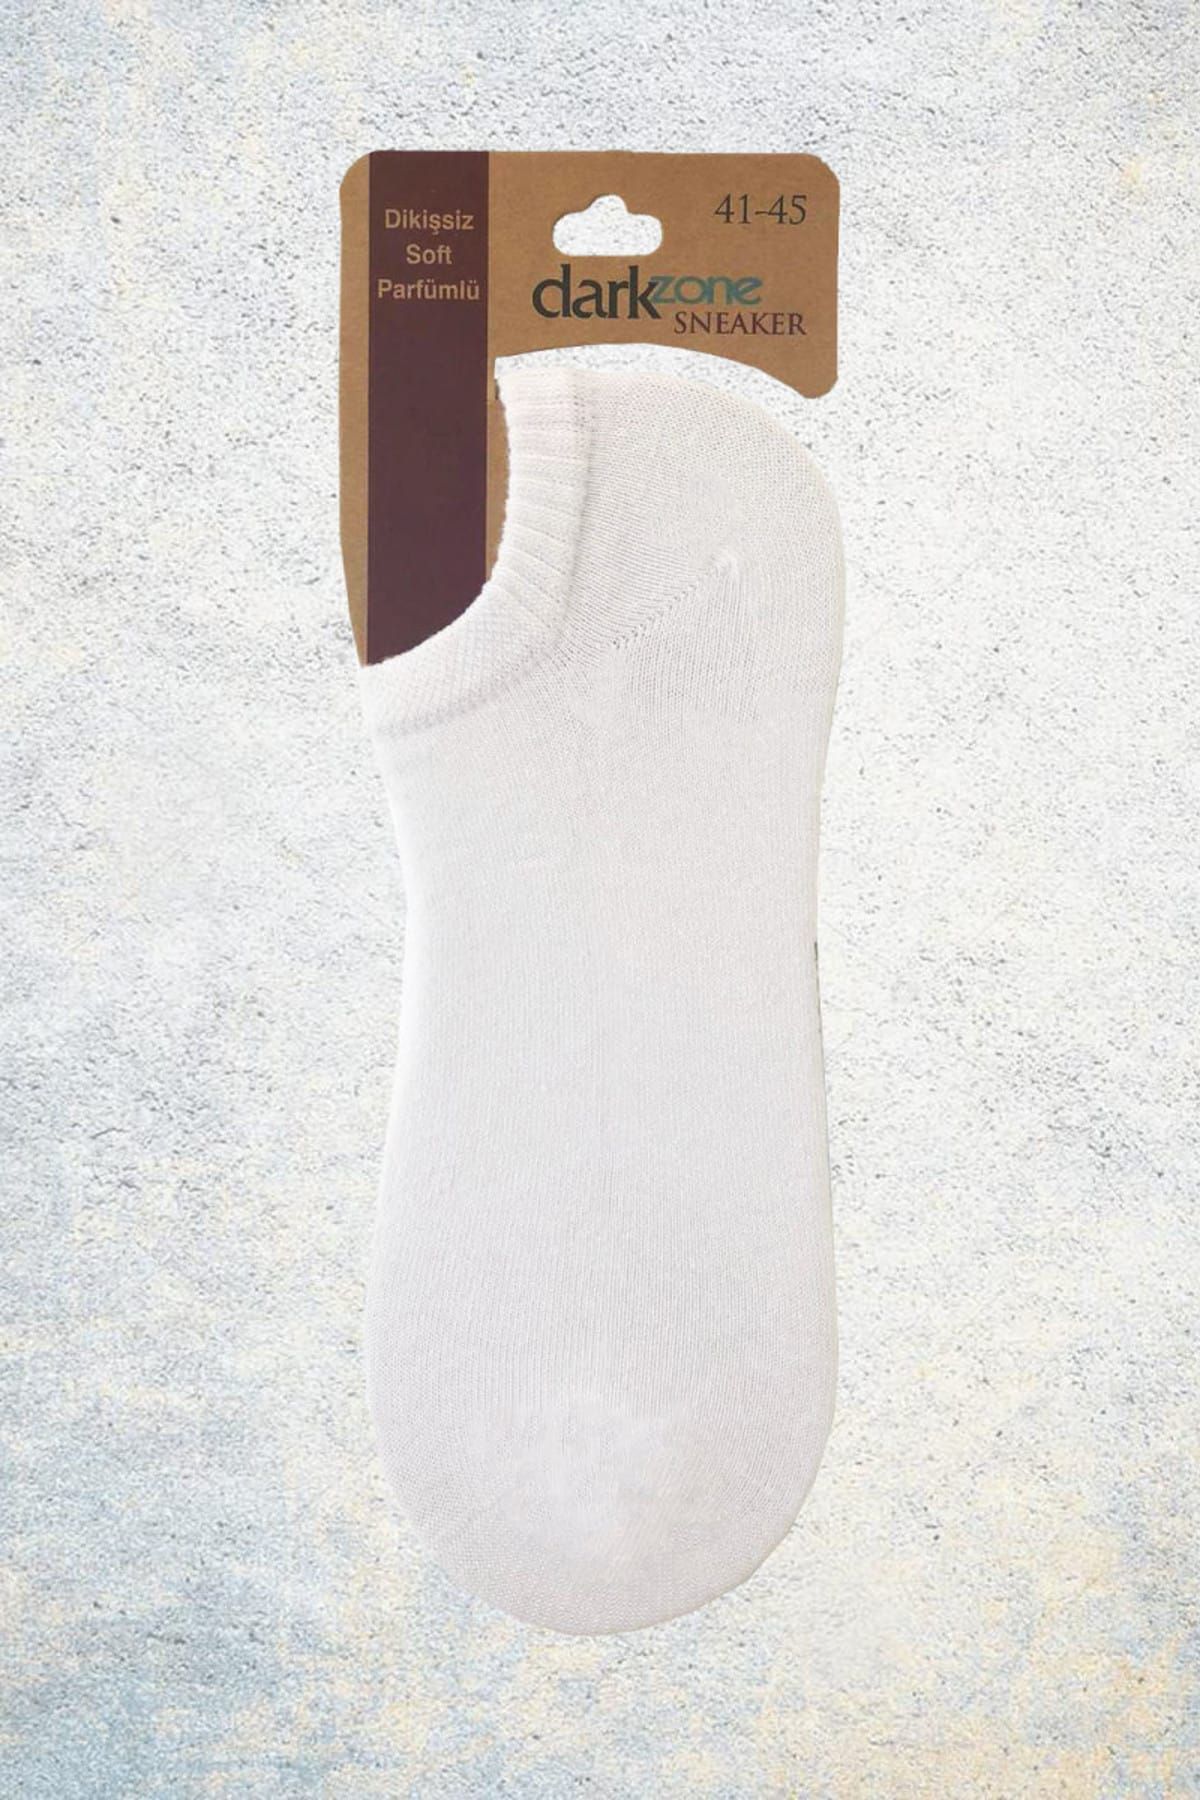 Darkzone Beyaz Sneaker Çorap - DZCP0102